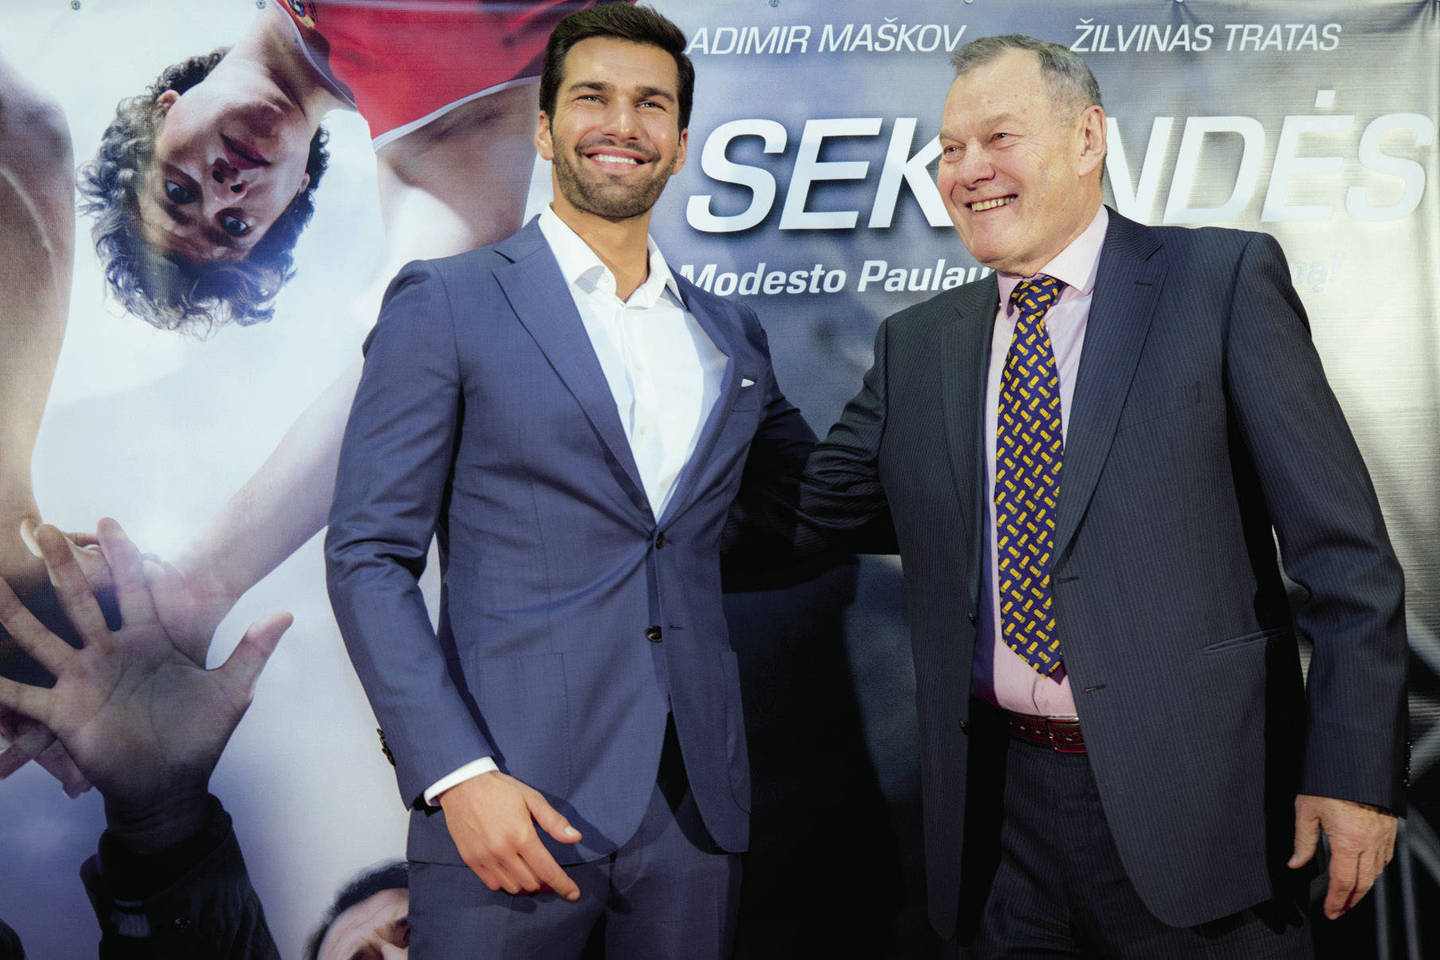 Filmo „3 sekundės“ pristatymas Lietuvoje: Žilvinas Tratas ir legendinis krepšininkas Modestas Paulauskas, kurį aktorius įkūnijo šioje sportinėje dramoje. <br>A.Didžgalvio nuotr.